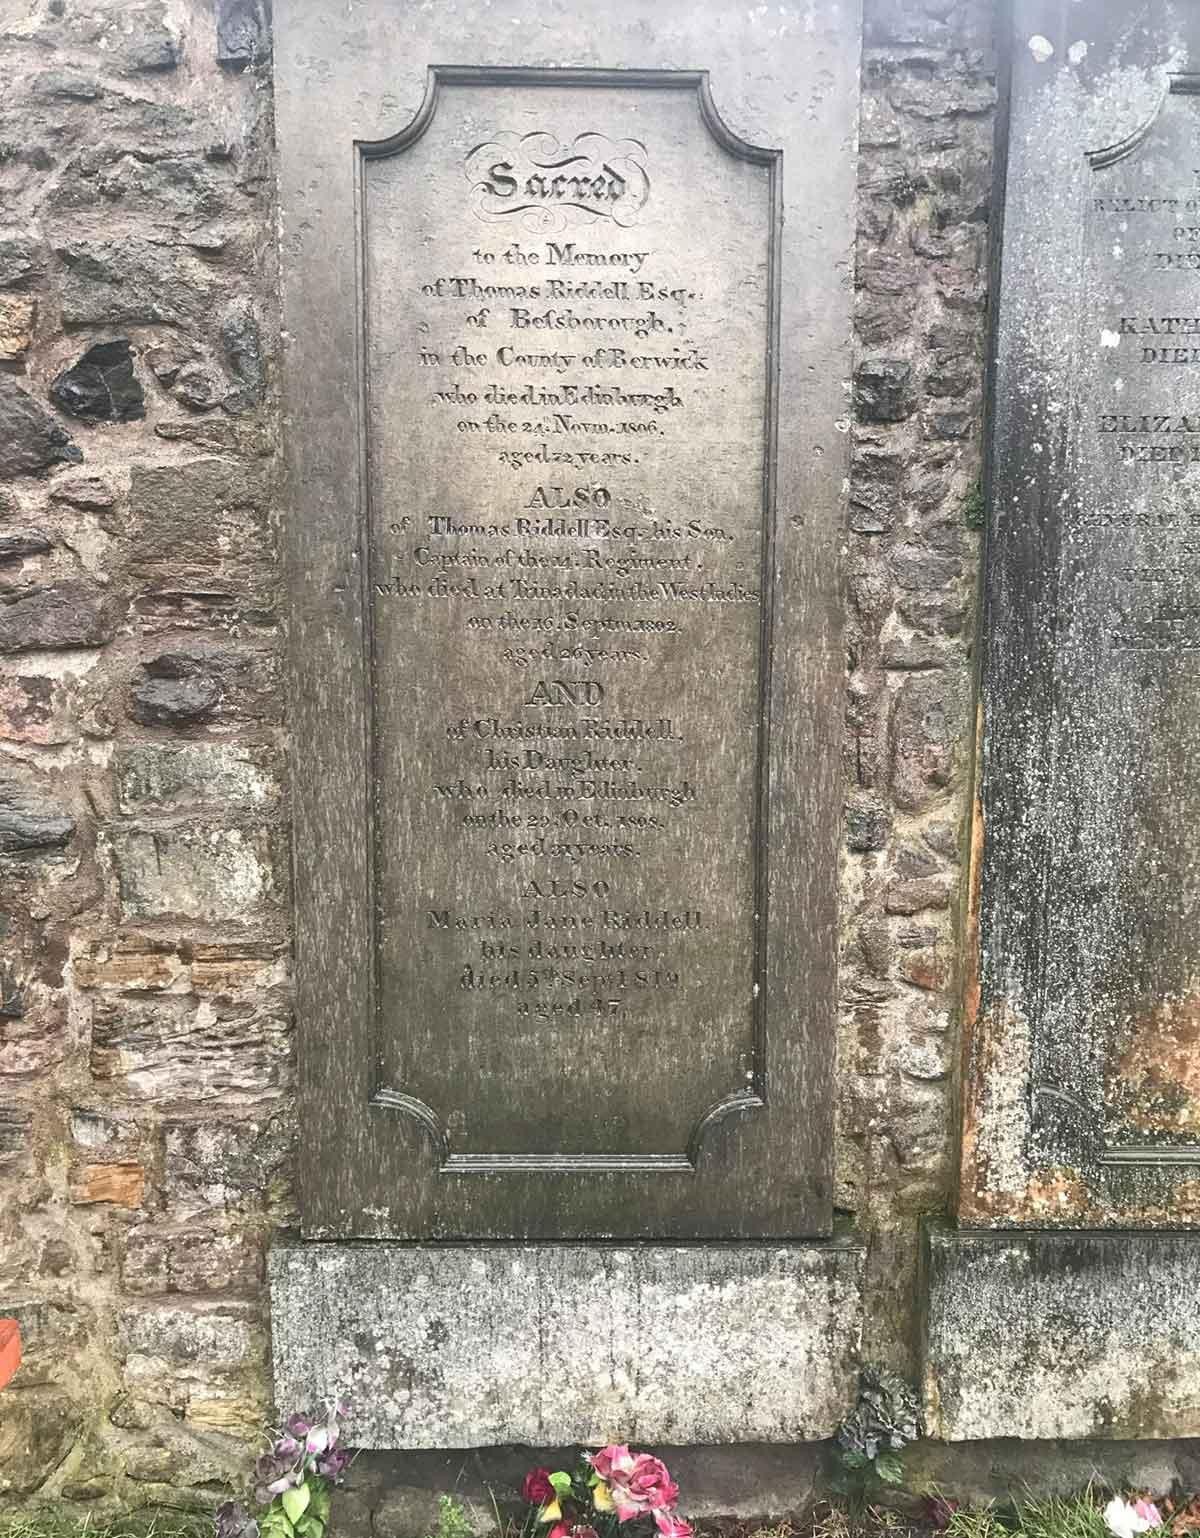 The gravestone for Thomas Riddell